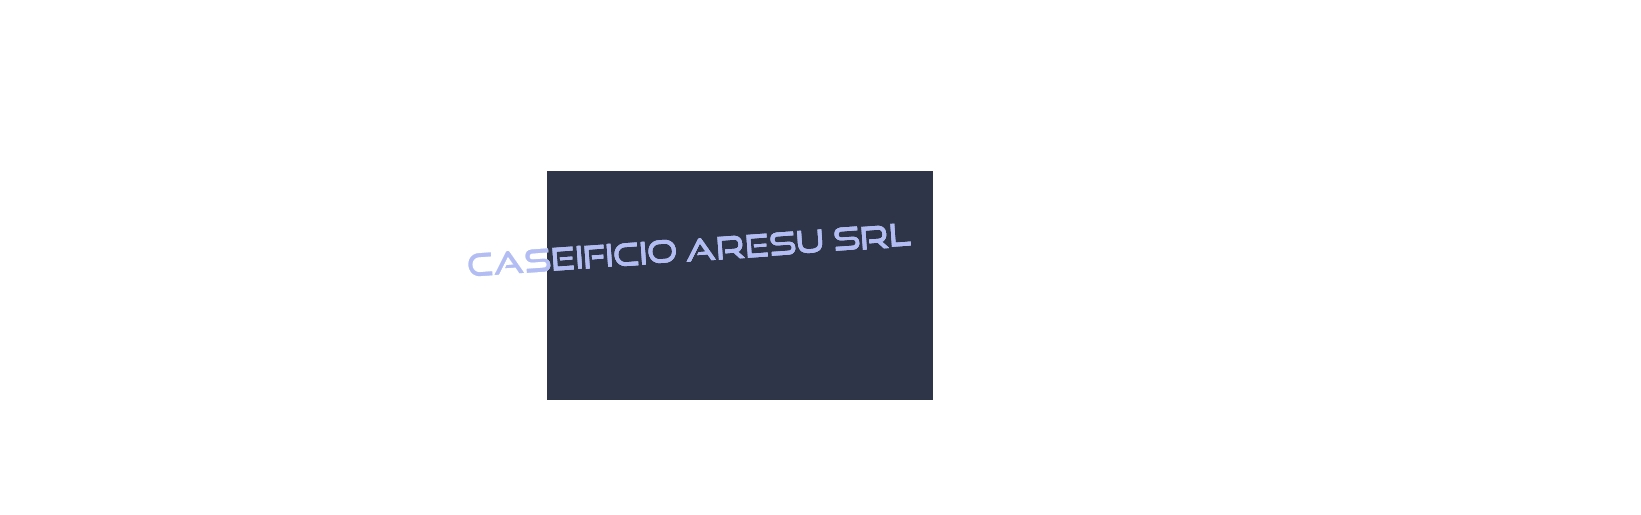 logo Caseificio Aresu Srl